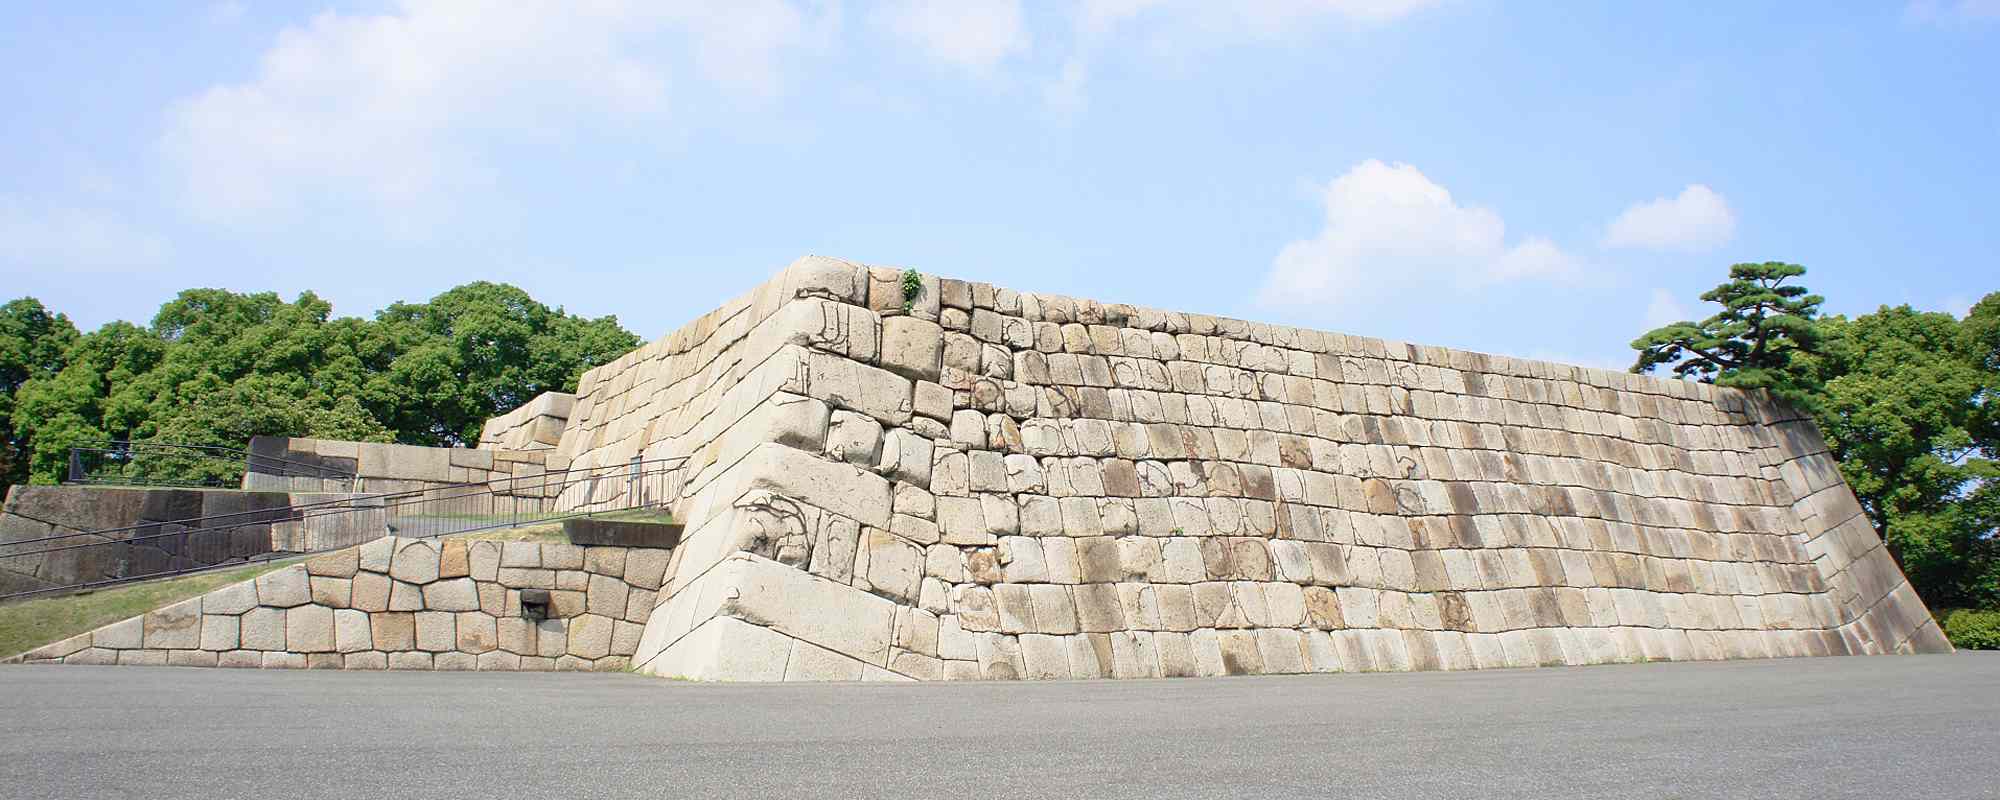 皇居・江戸城跡